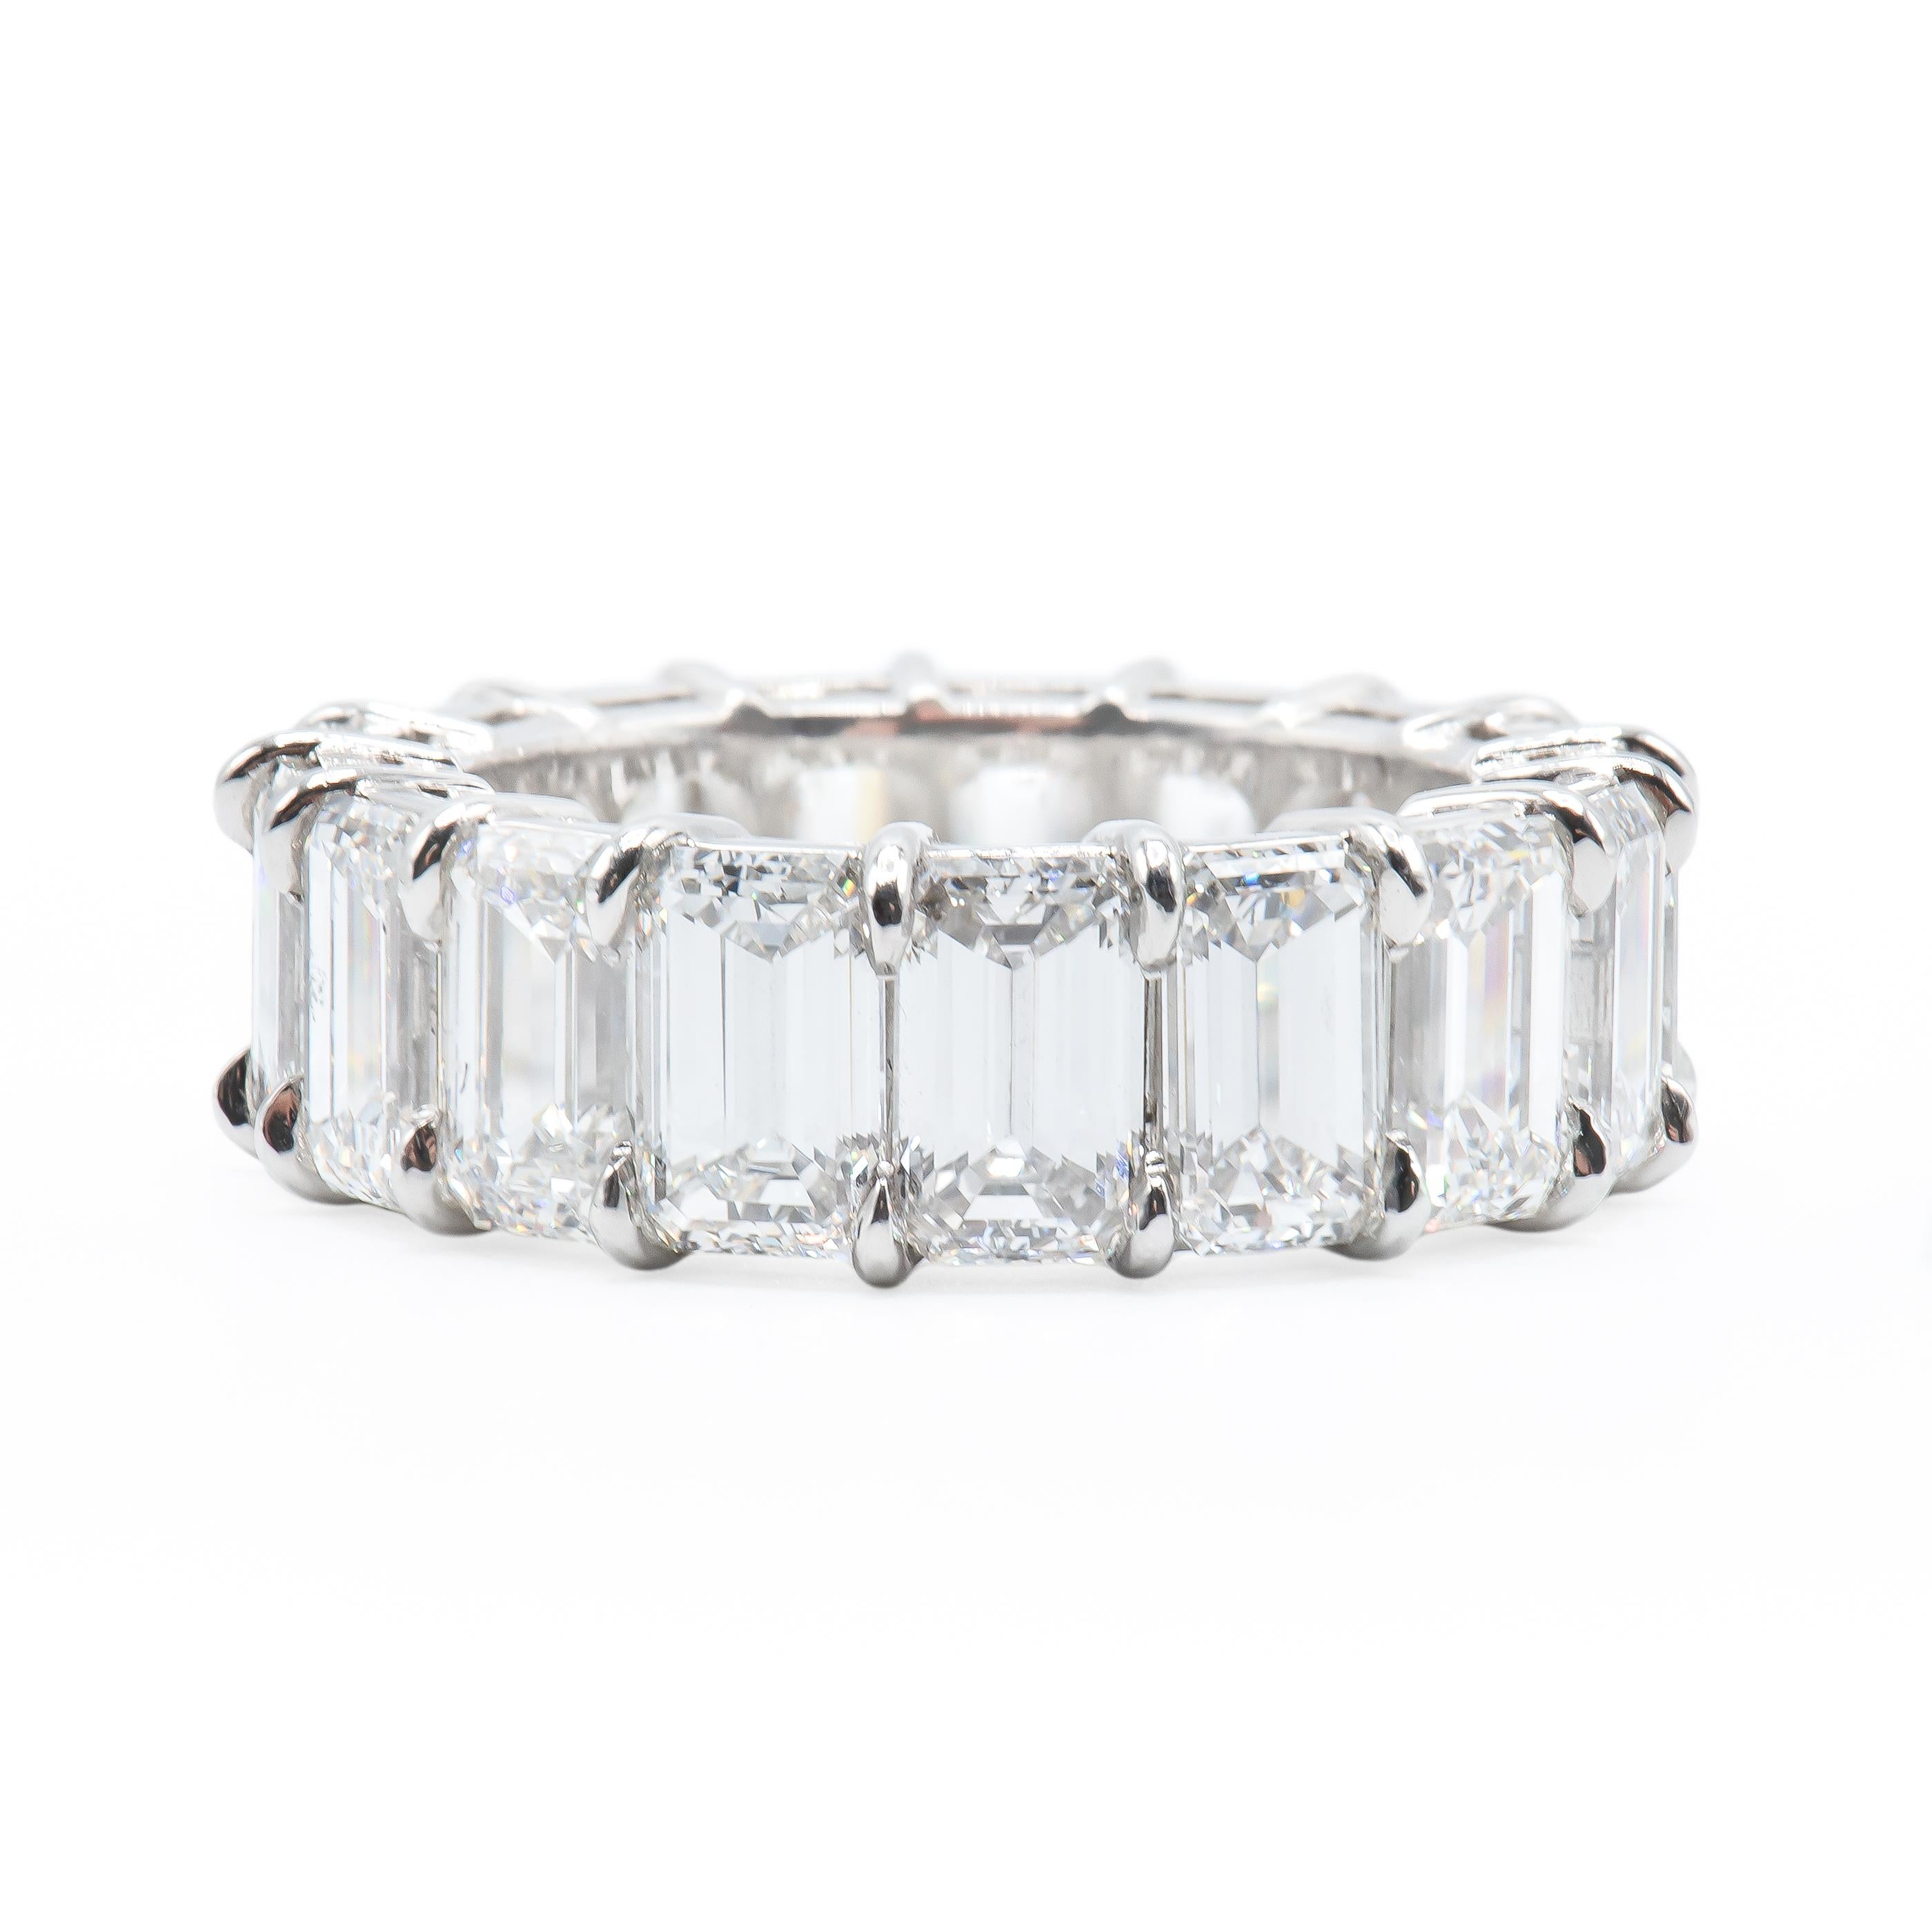 Bracelet d'éternité classique en diamant taillé en émeraude avec 17 pierres pesant un total de 9,75 carats. La moyenne est de 58 points par personne.
Les diamants sont de couleur GH et de pureté VS.
En platine.
Taille 6.5